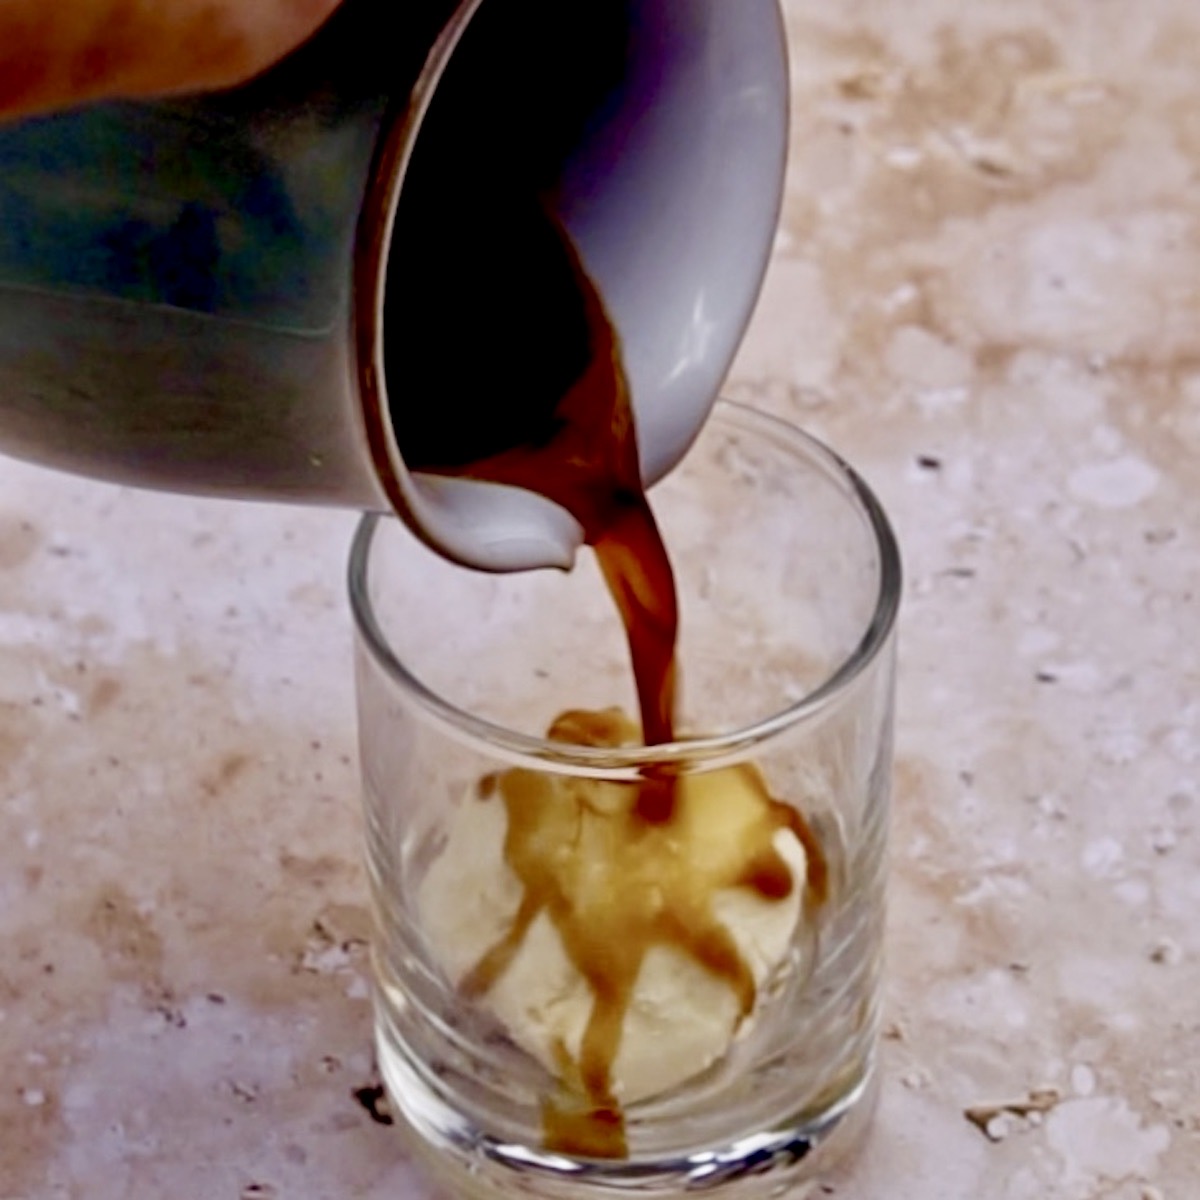 Pouring coffee over ice cream to prepare affogato